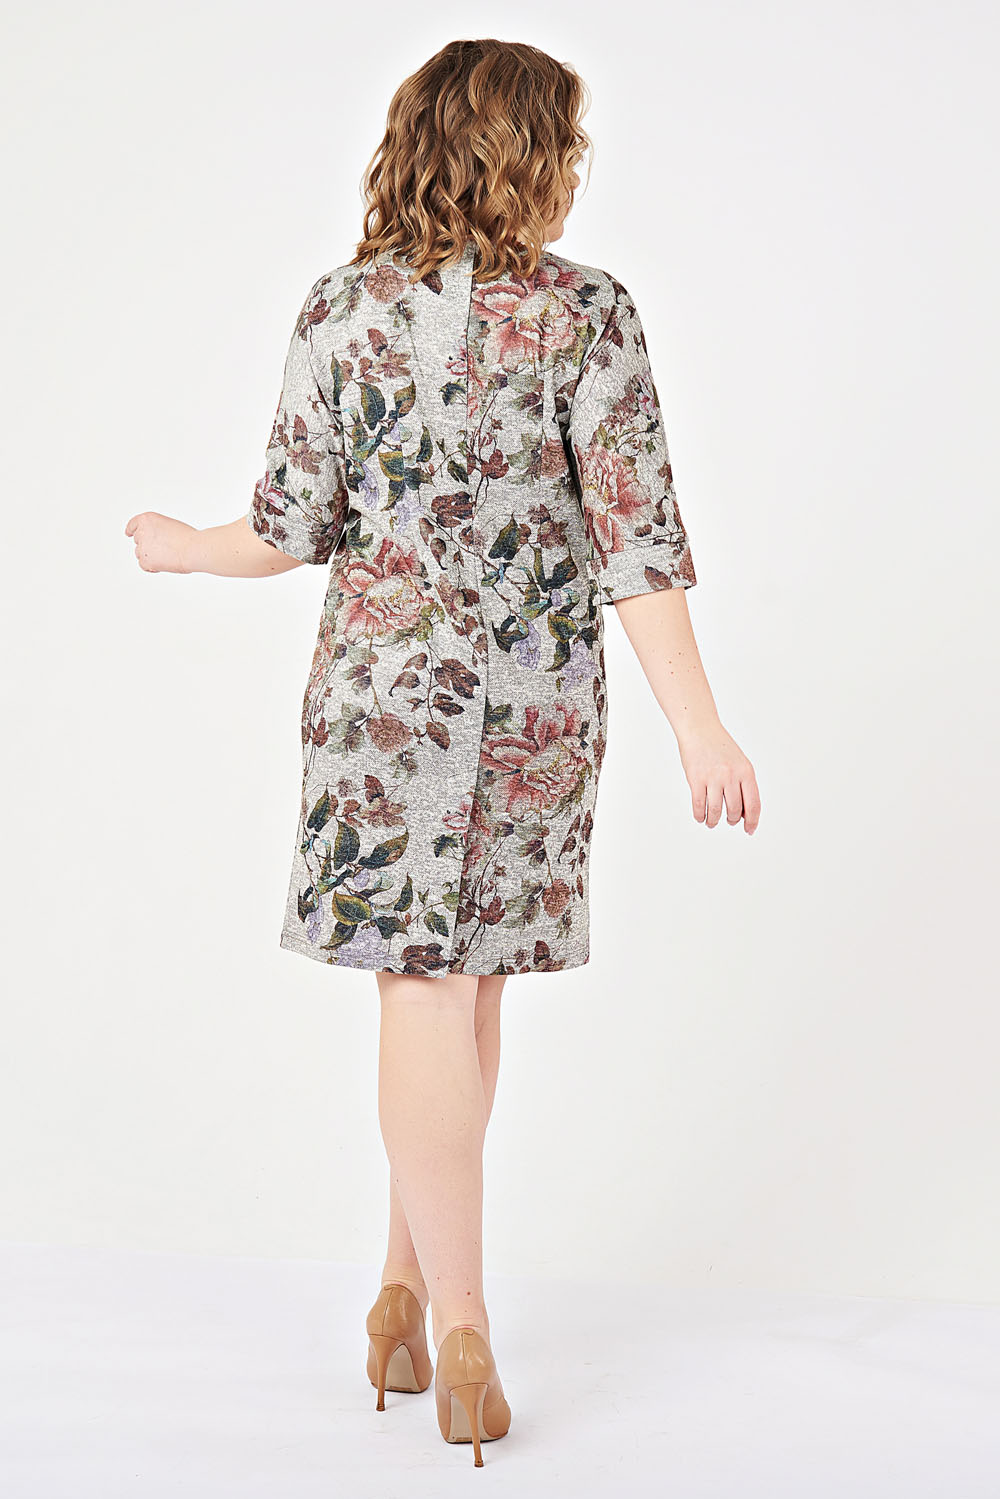 Фото товара 16334, серое трикотажное платье с цветами